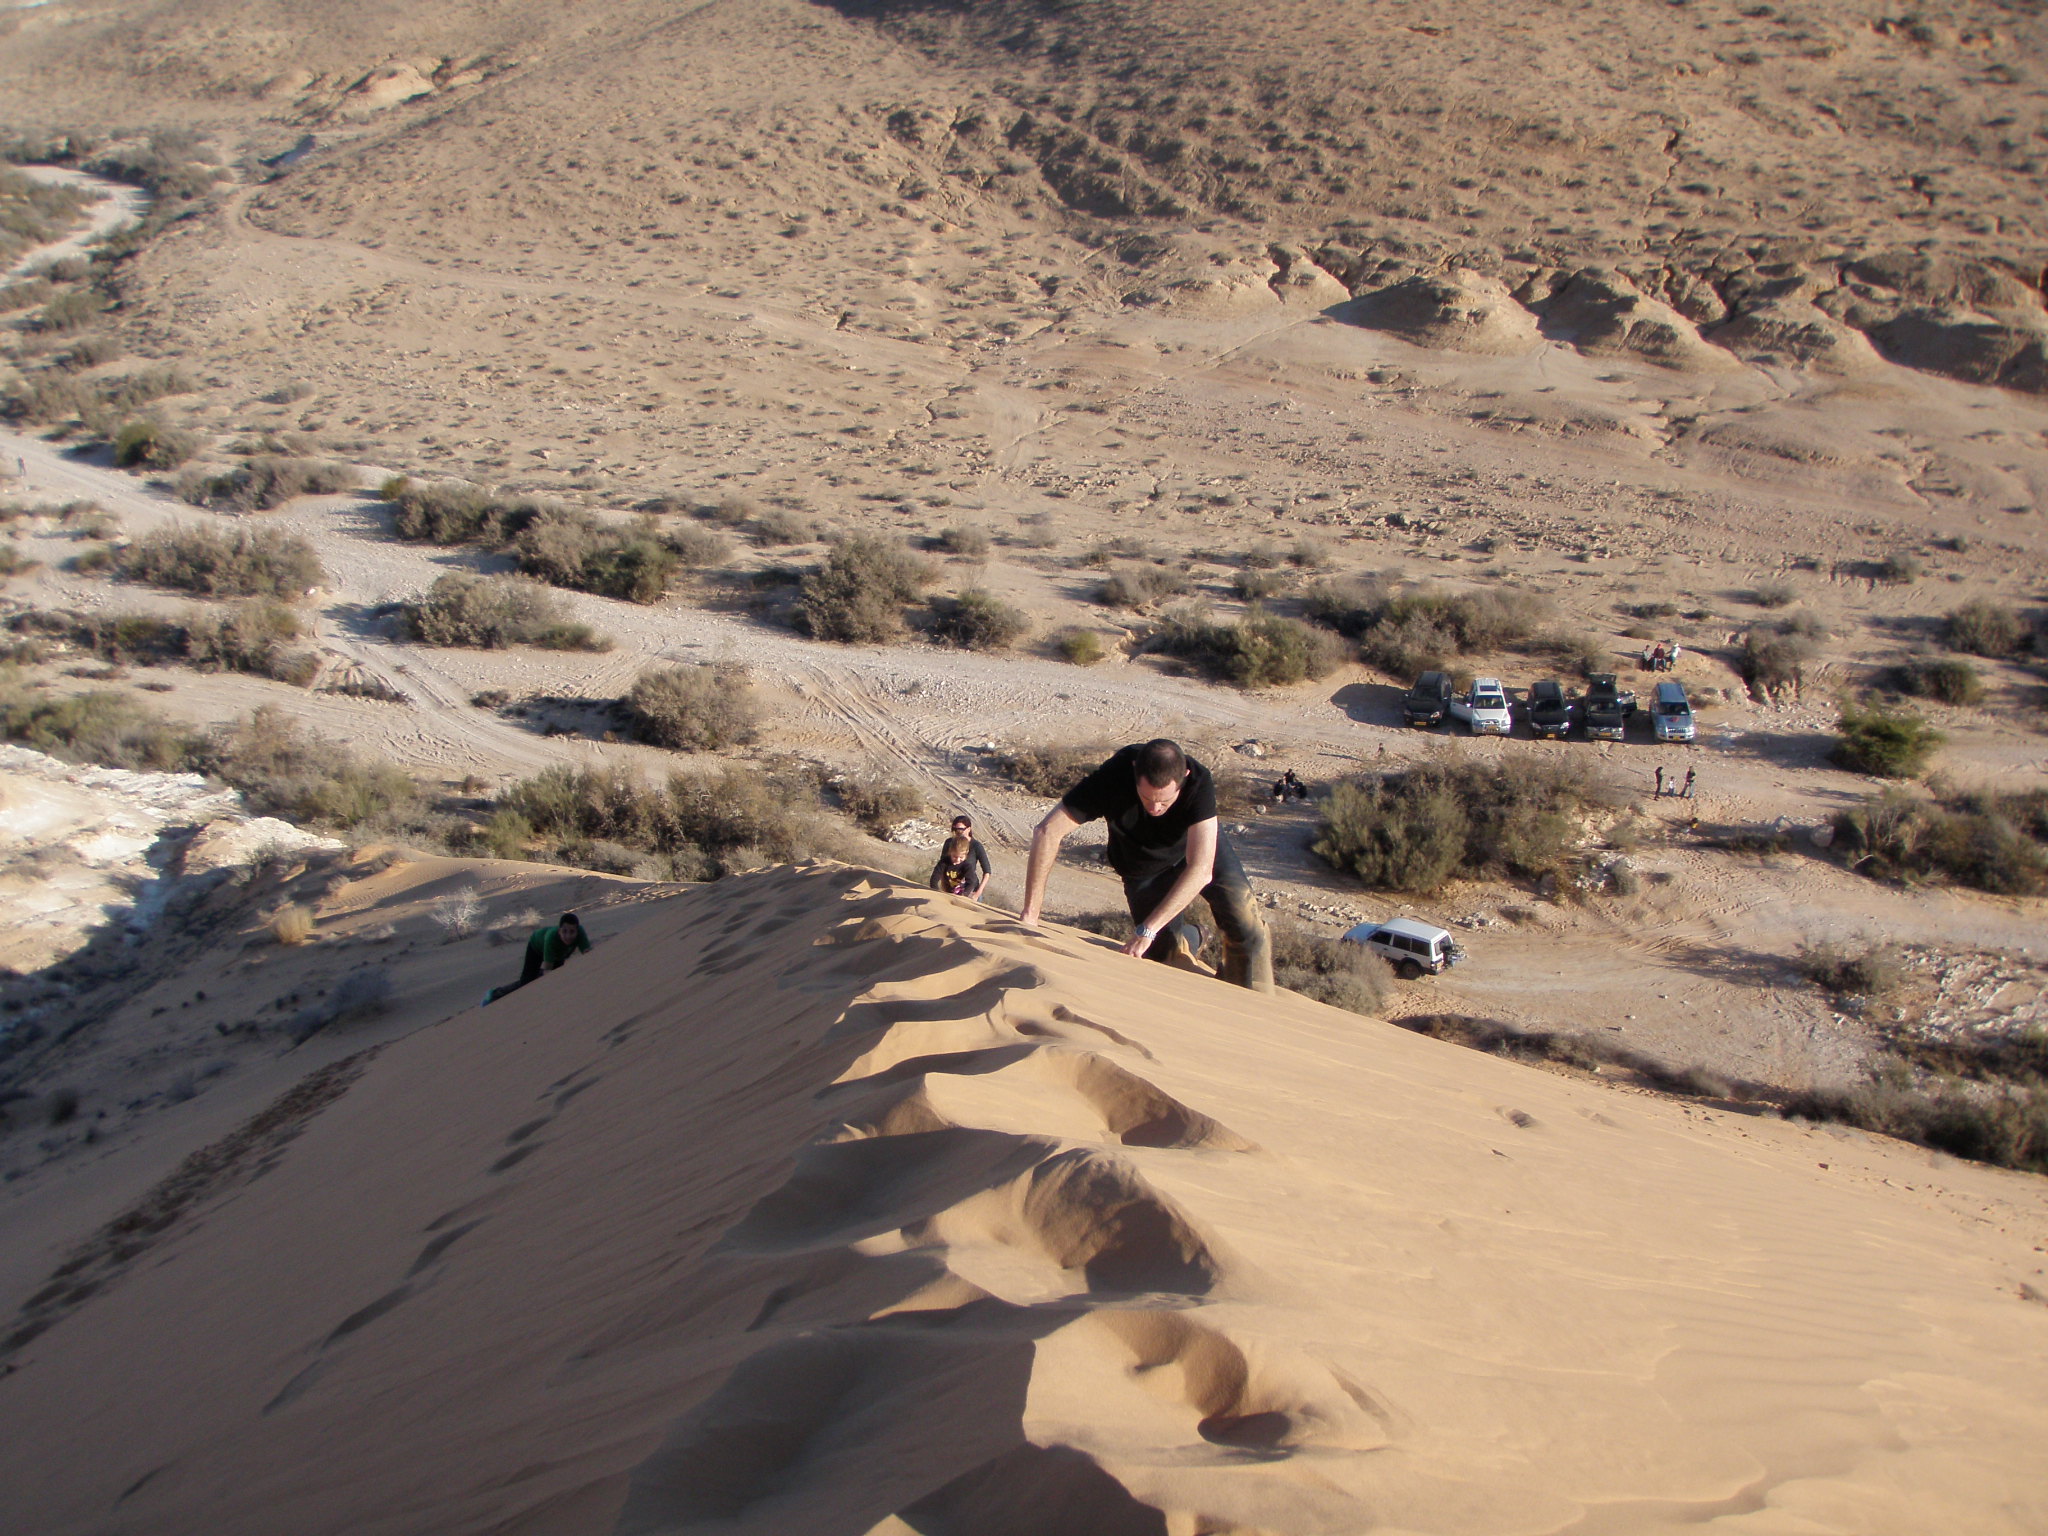 טיולי ג'יפים חולות חלוצה שונרה ועגור. Halutza-Agur-Shunra Negev dune Adventure 4